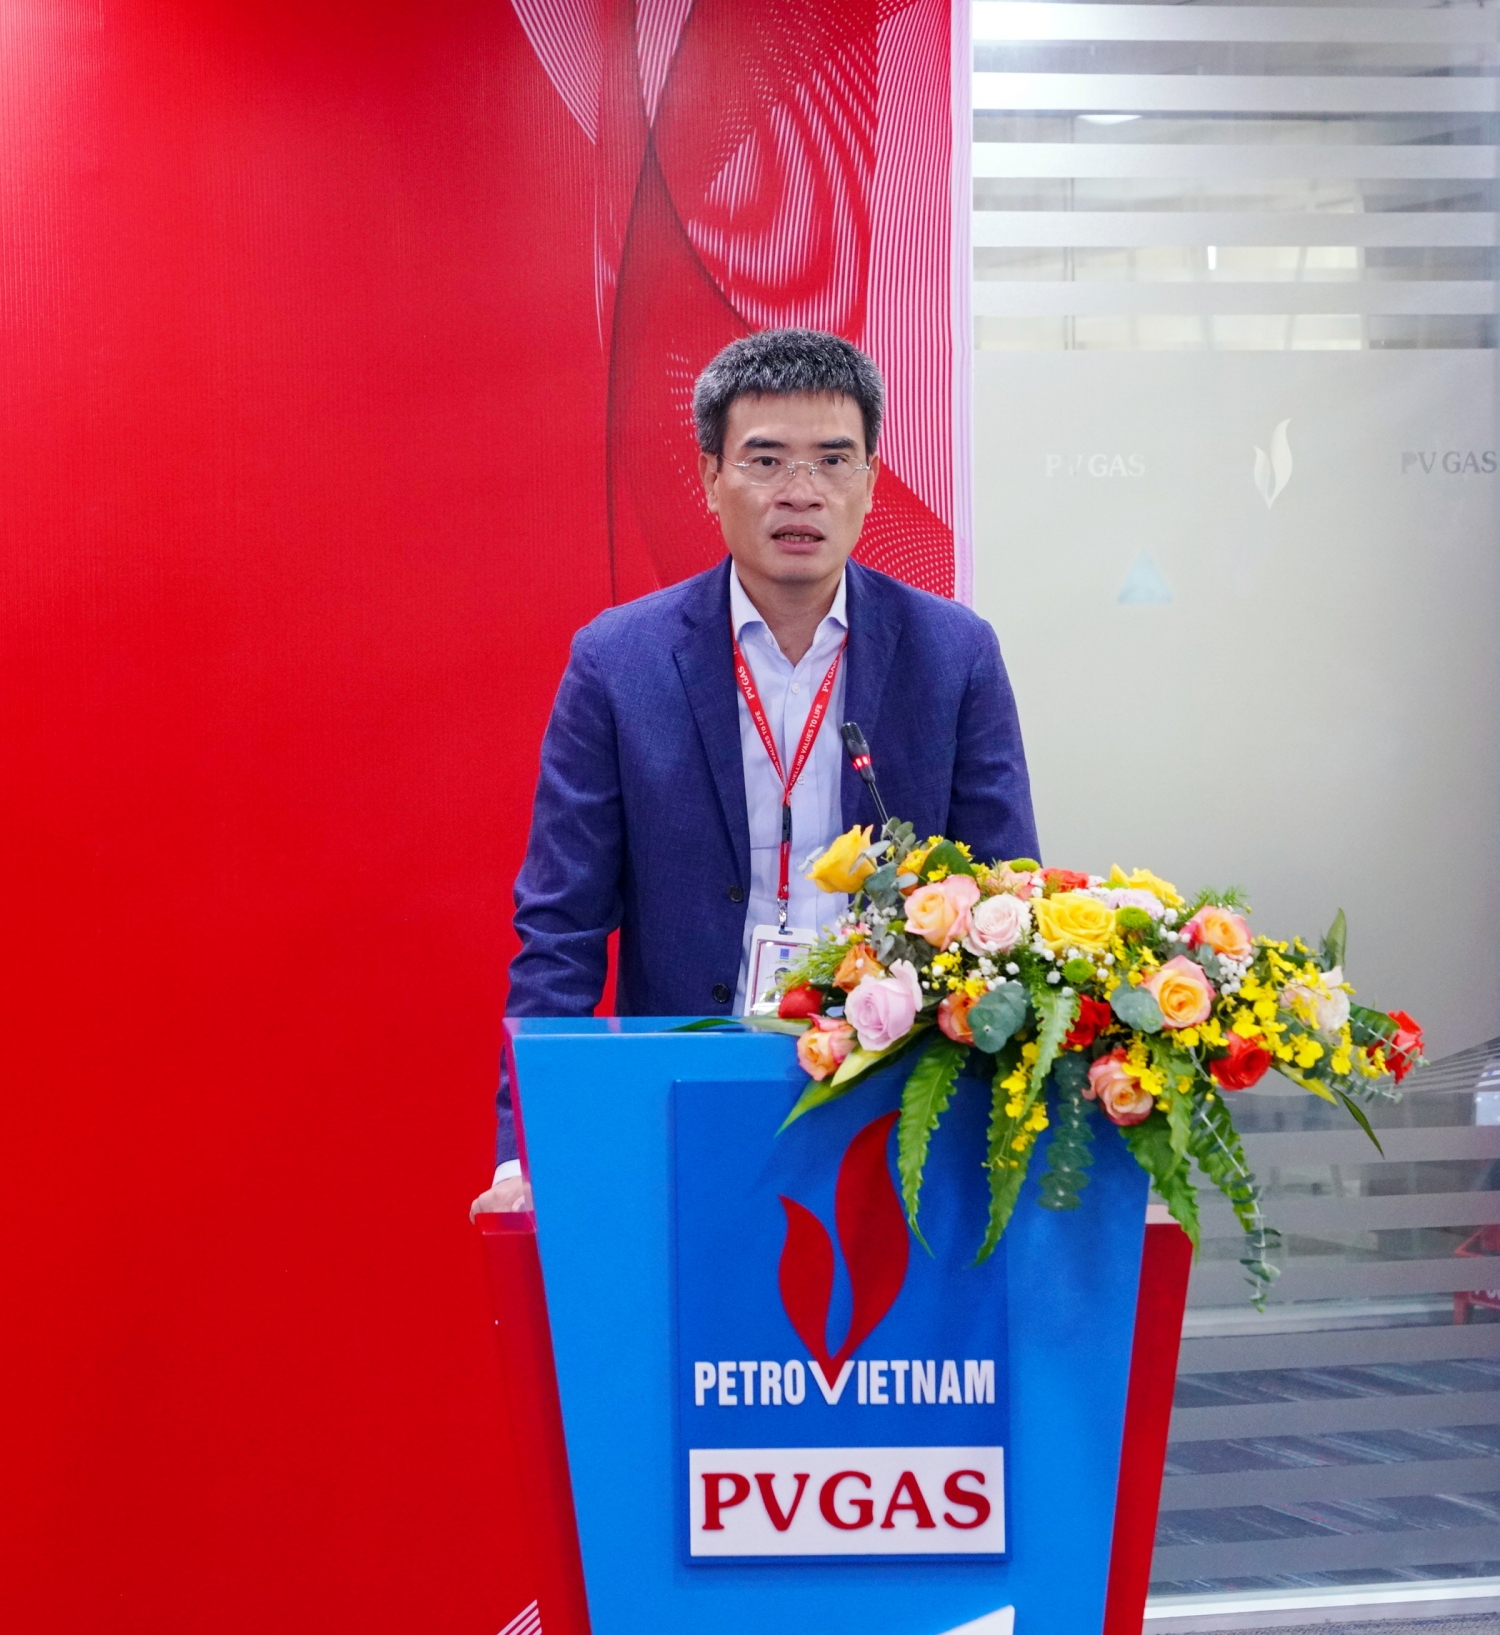 hát biểu chúc mừng của Bí thư Đảng ủy, Tổng giám đốc PV GAS Dương Mạnh Sơn